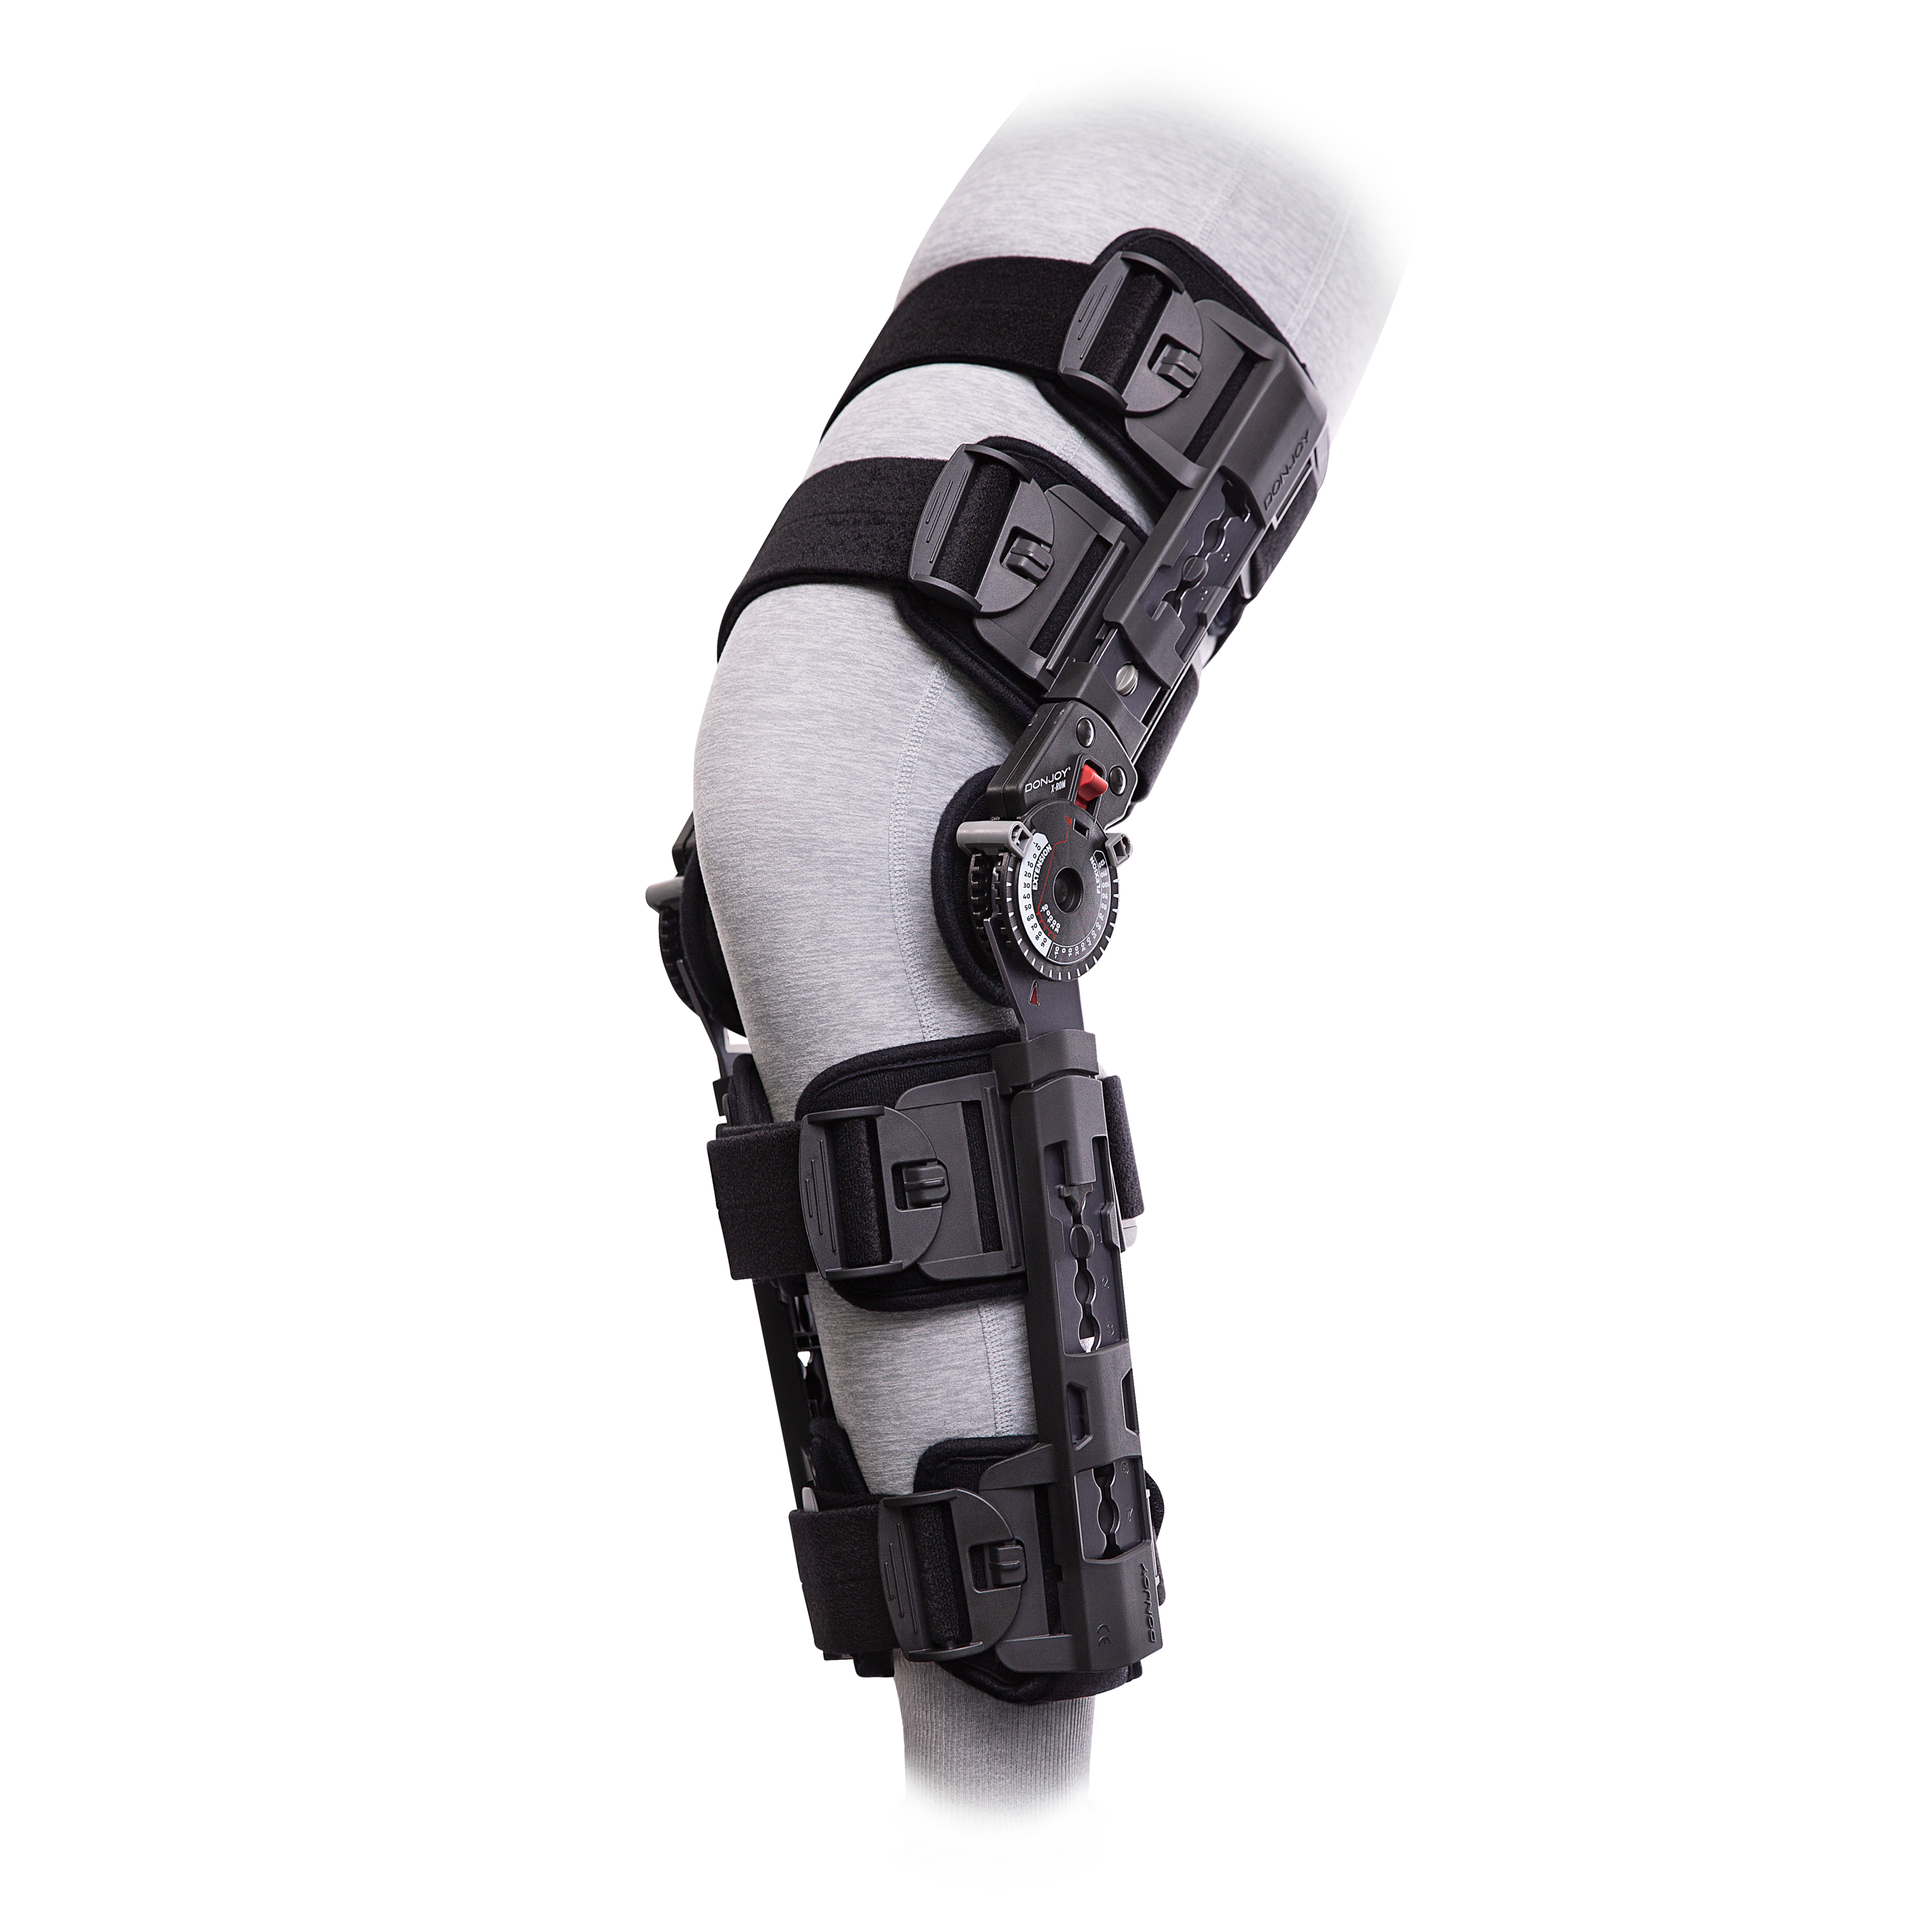 Produktbild DONJOY® X-ROM, Knieorthese zur frühfunktionellen Mobilisierung